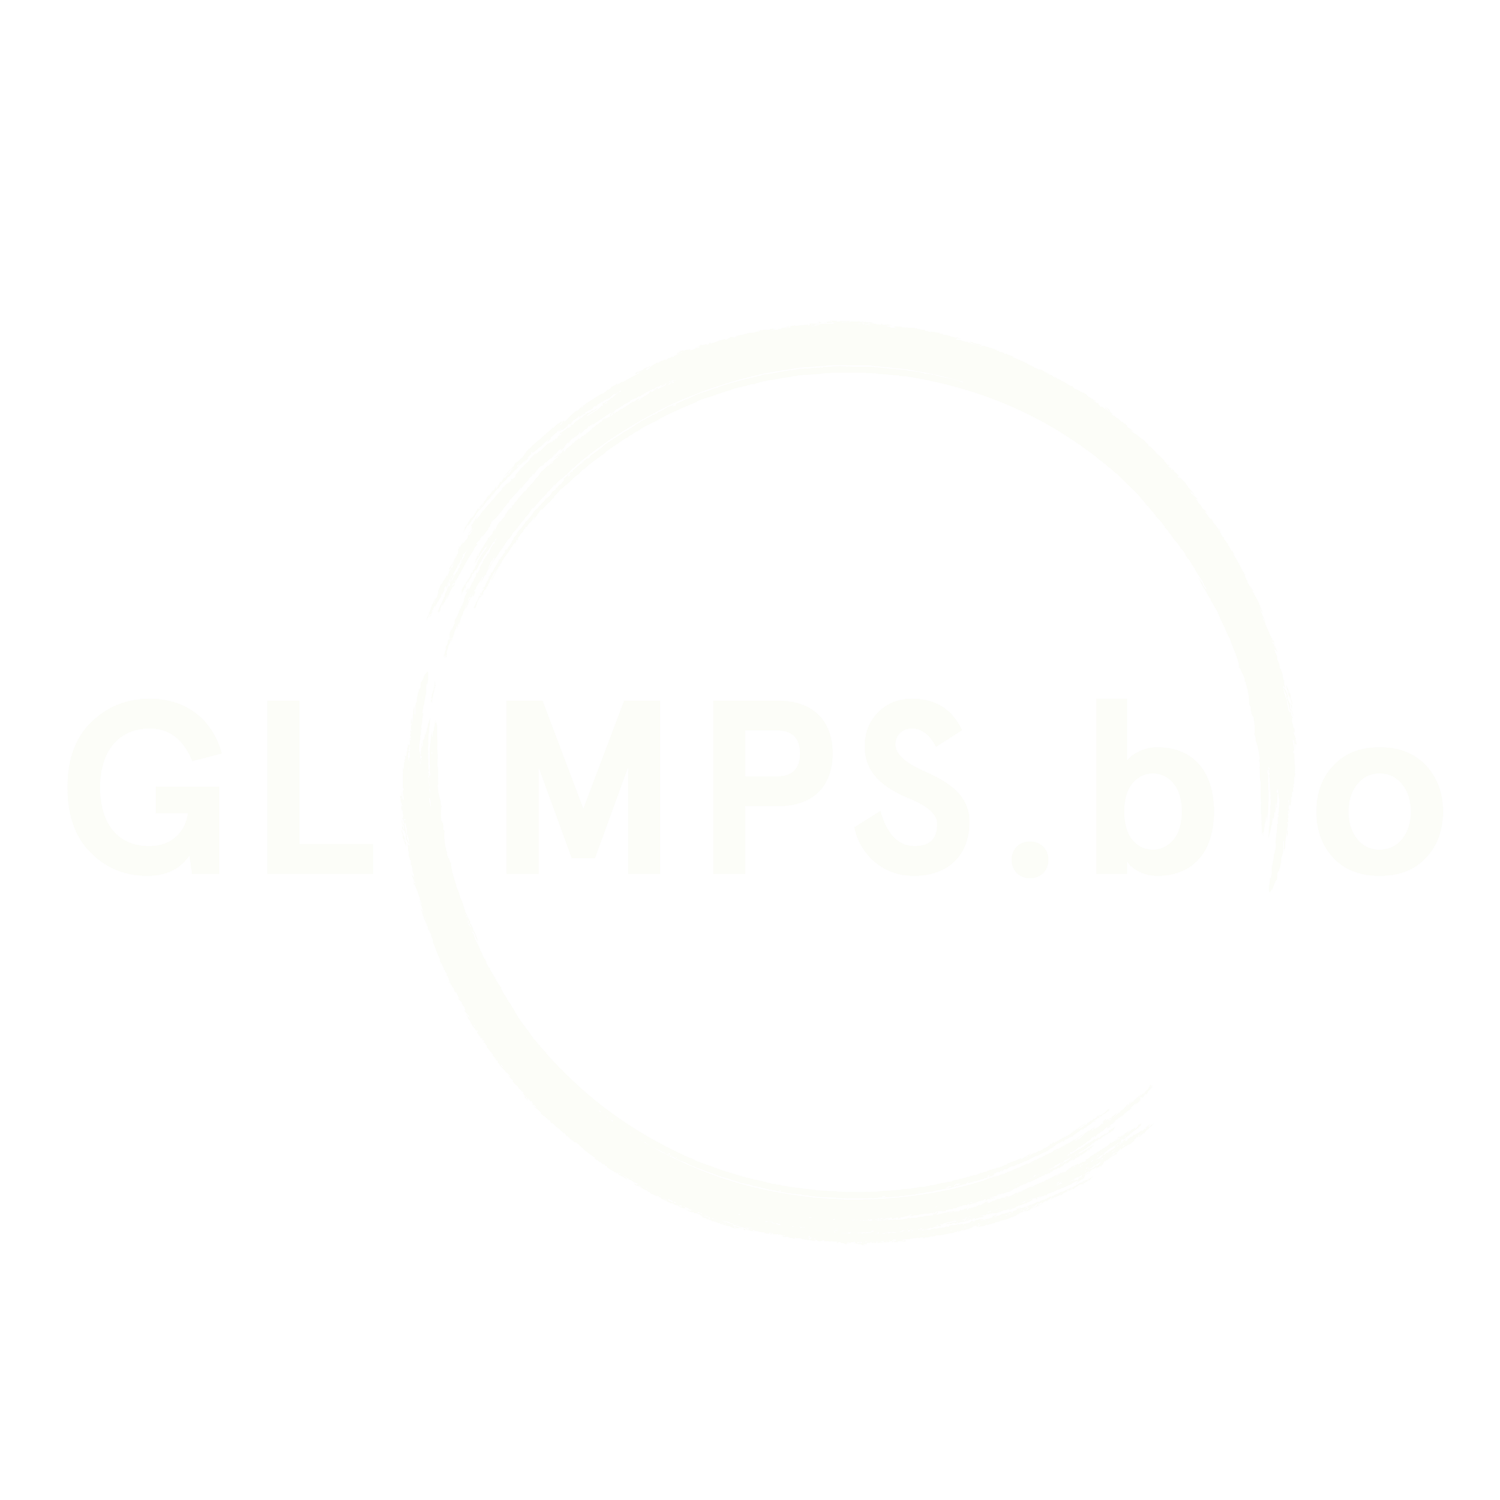 Glimps.bio